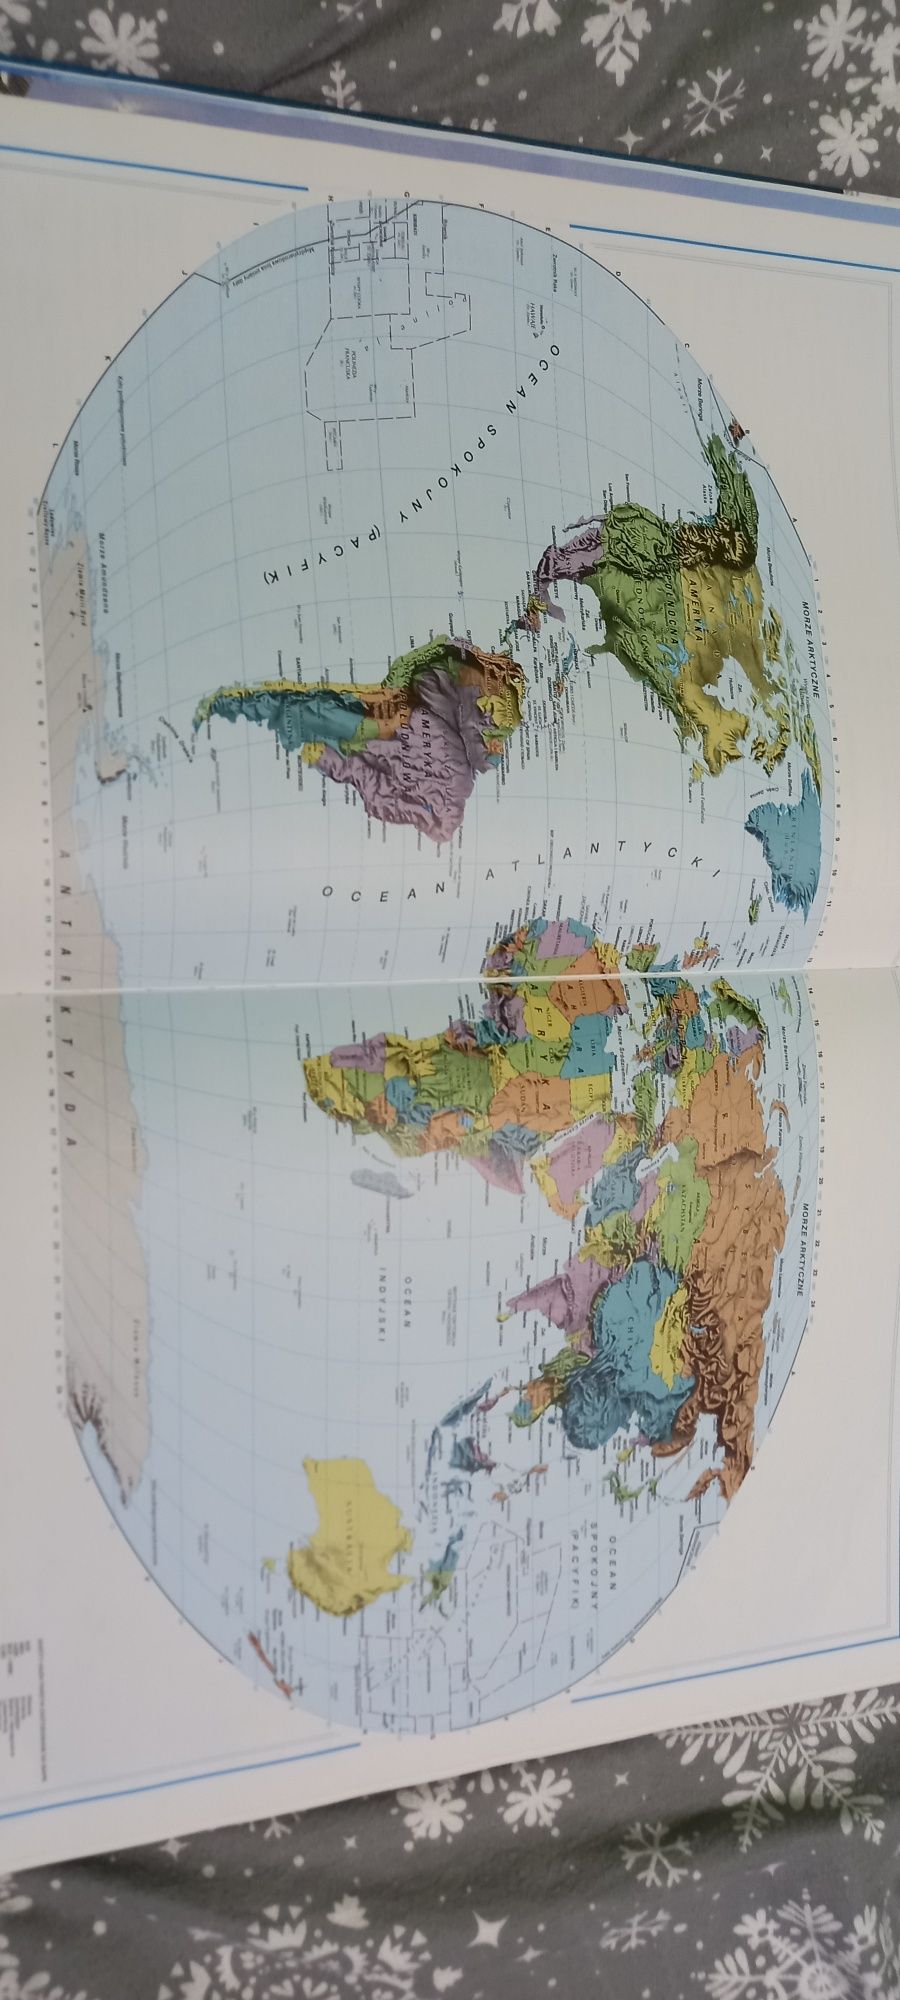 Duży ilustrowany Atlas Świata Mapy 330 str Przegląd Readers Digest A3